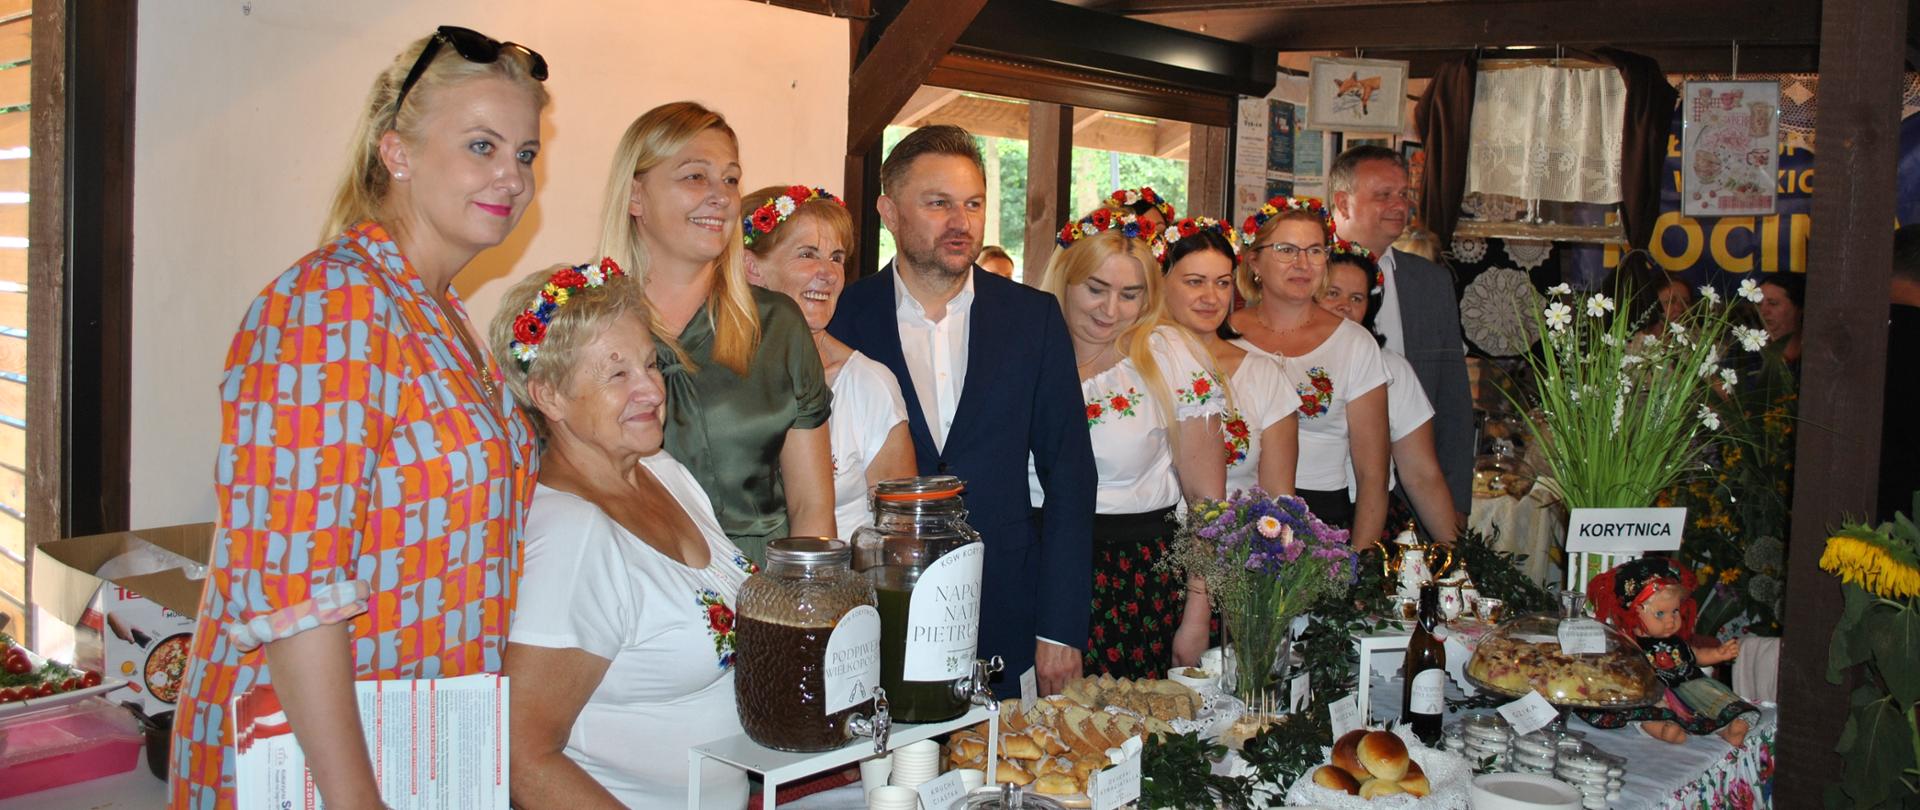 Grupa osób w tym członkinie KGW w wiankach z kwiatów i zaproszeni goście pozuje do zdjęcia za stołem zastawionym potrawami i napojami